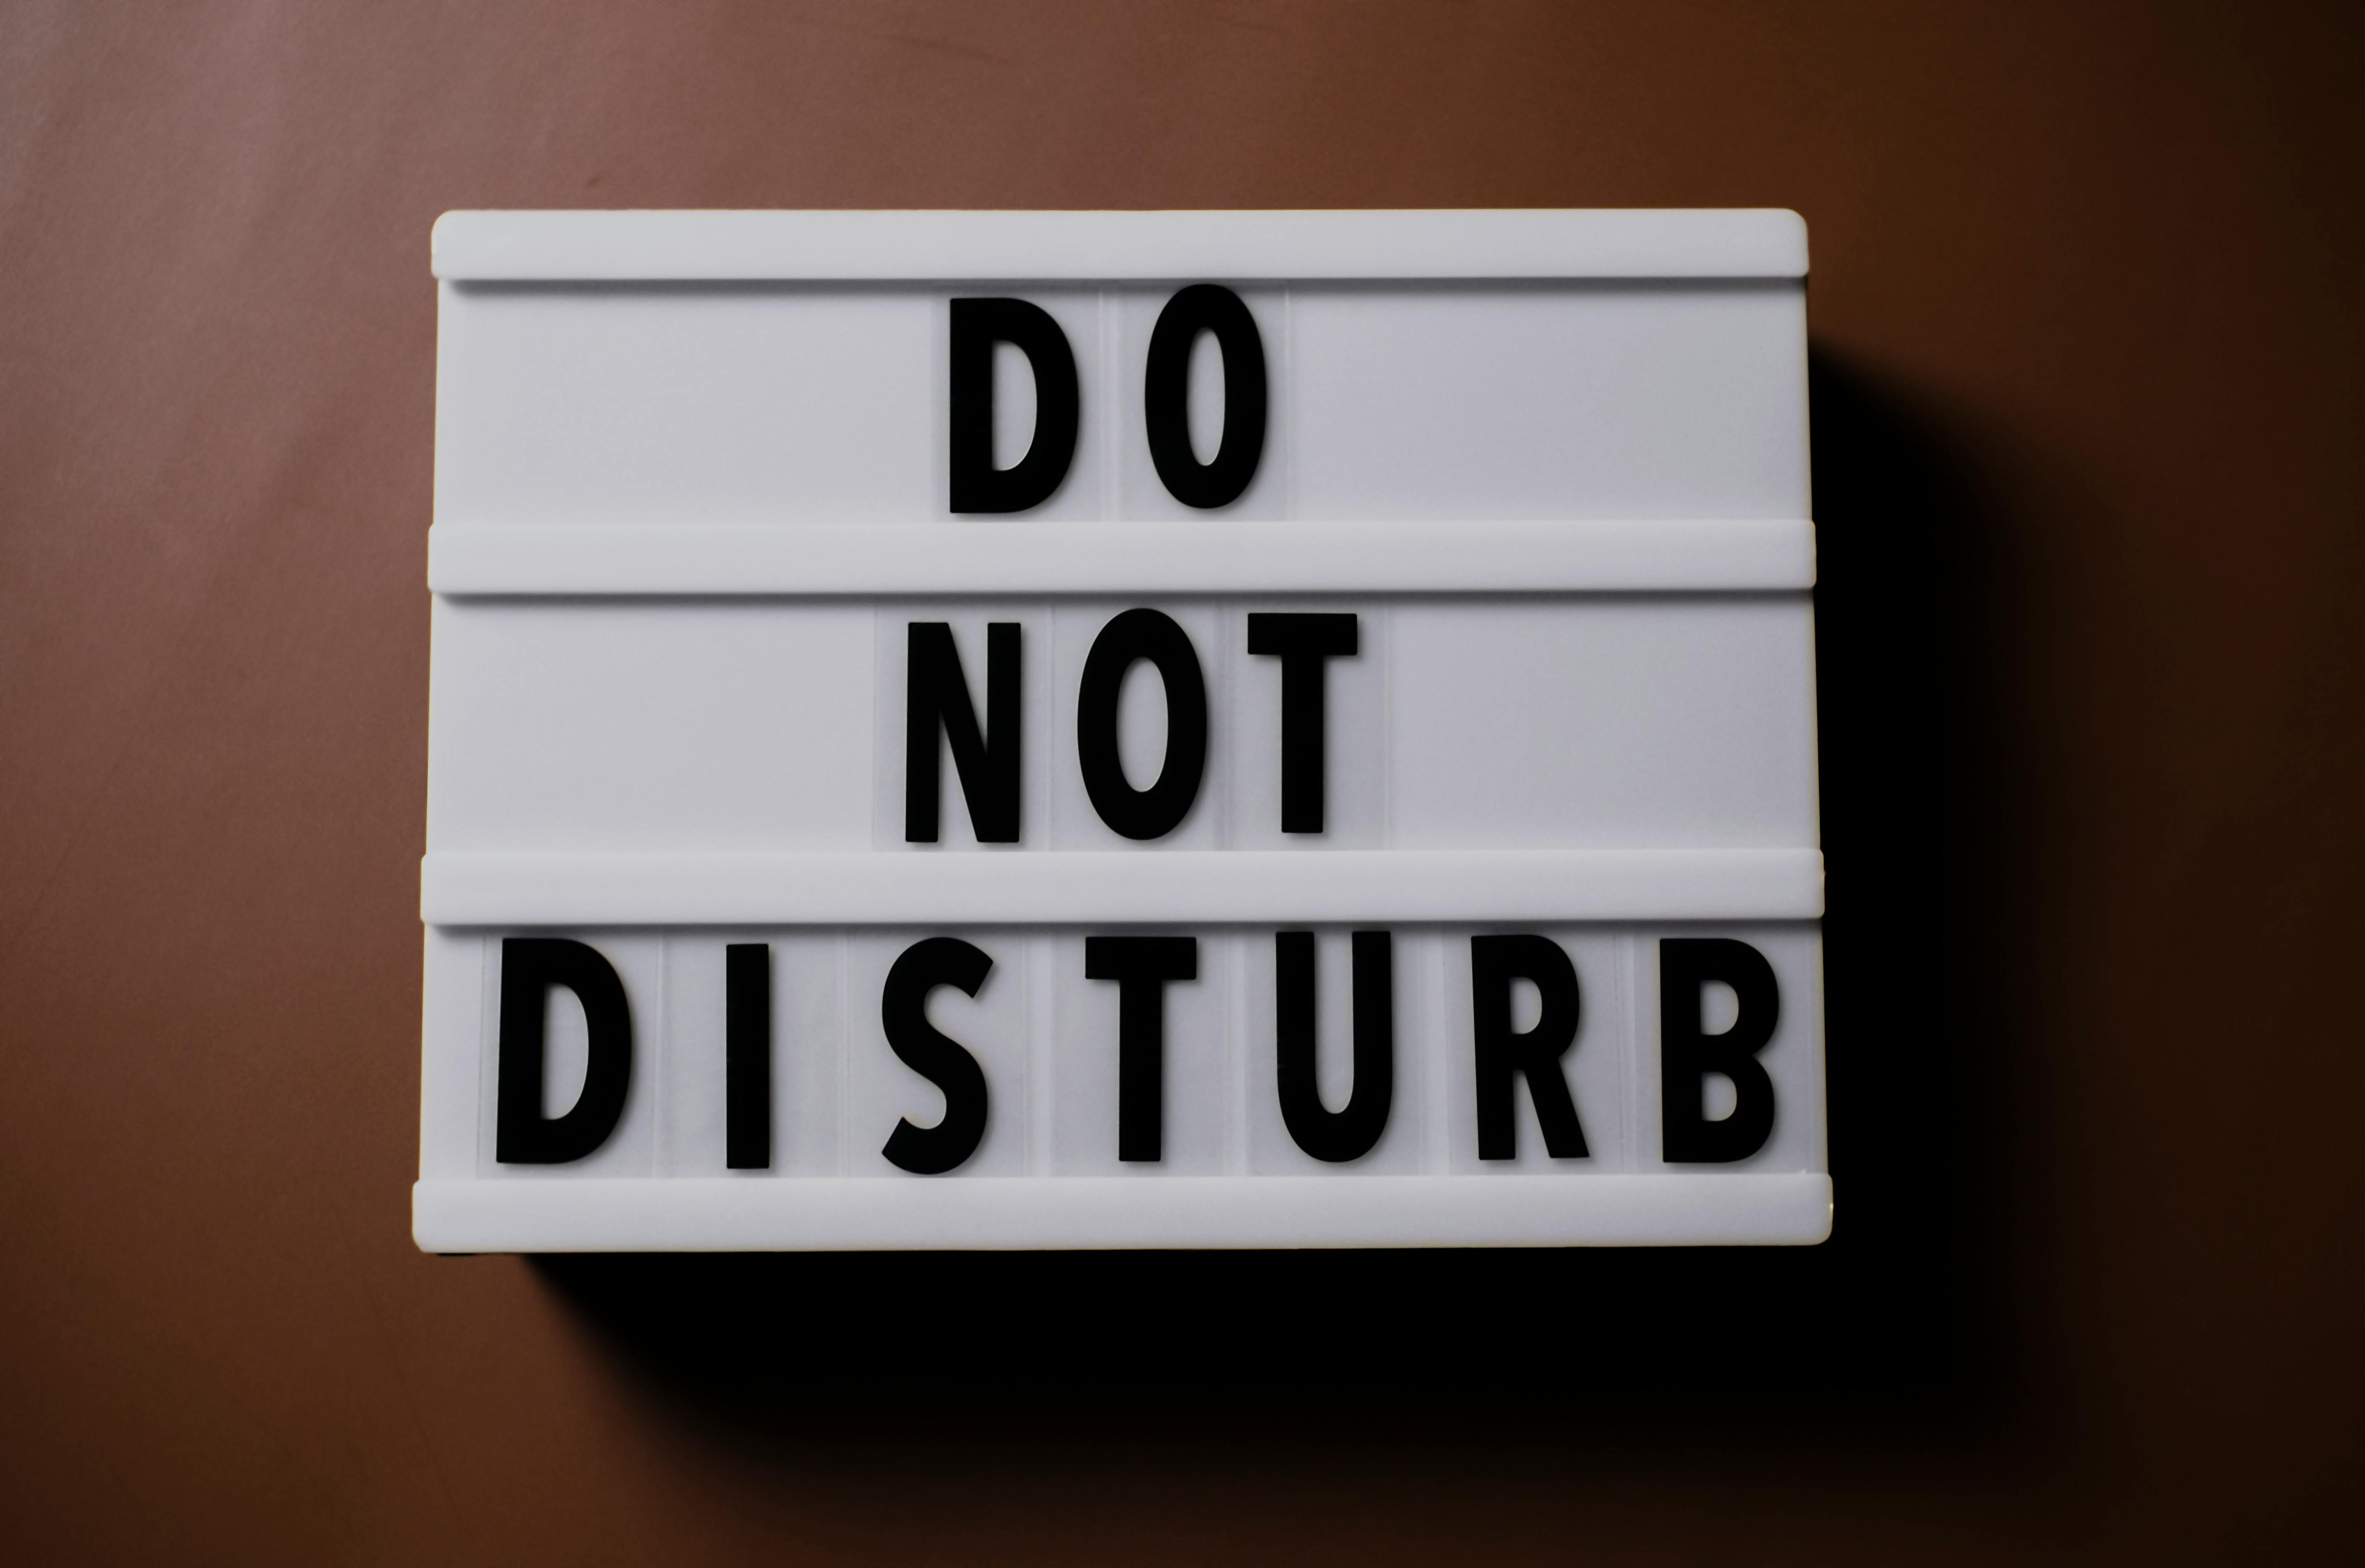 Do not disturb wallpaper by HotDogDeepThroat  Download on ZEDGE  e9d2